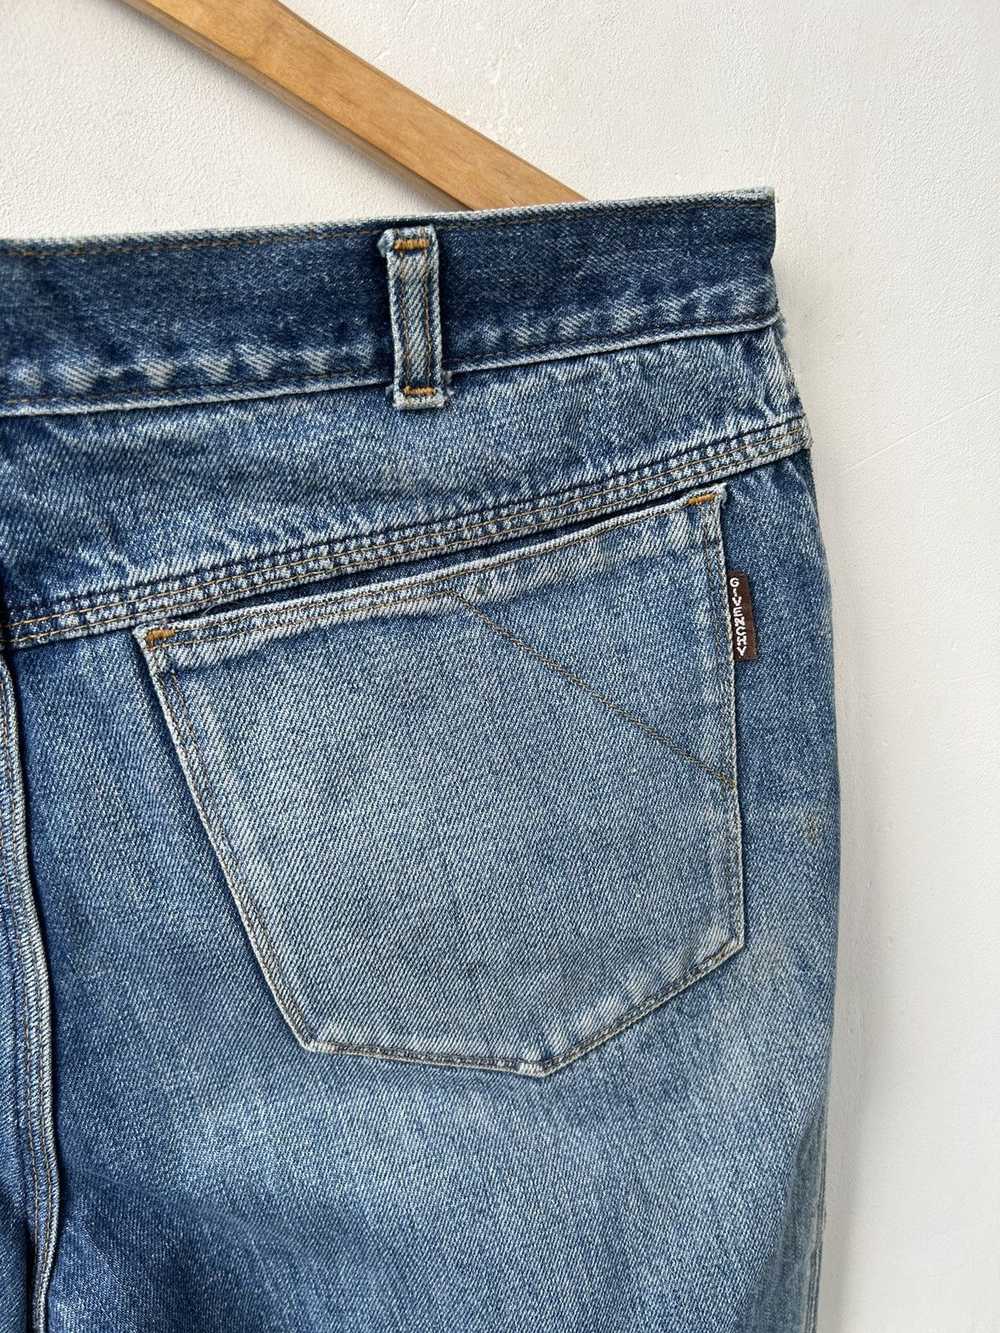 Givenchy × Streetwear × Vintage Vintage jeans - image 8